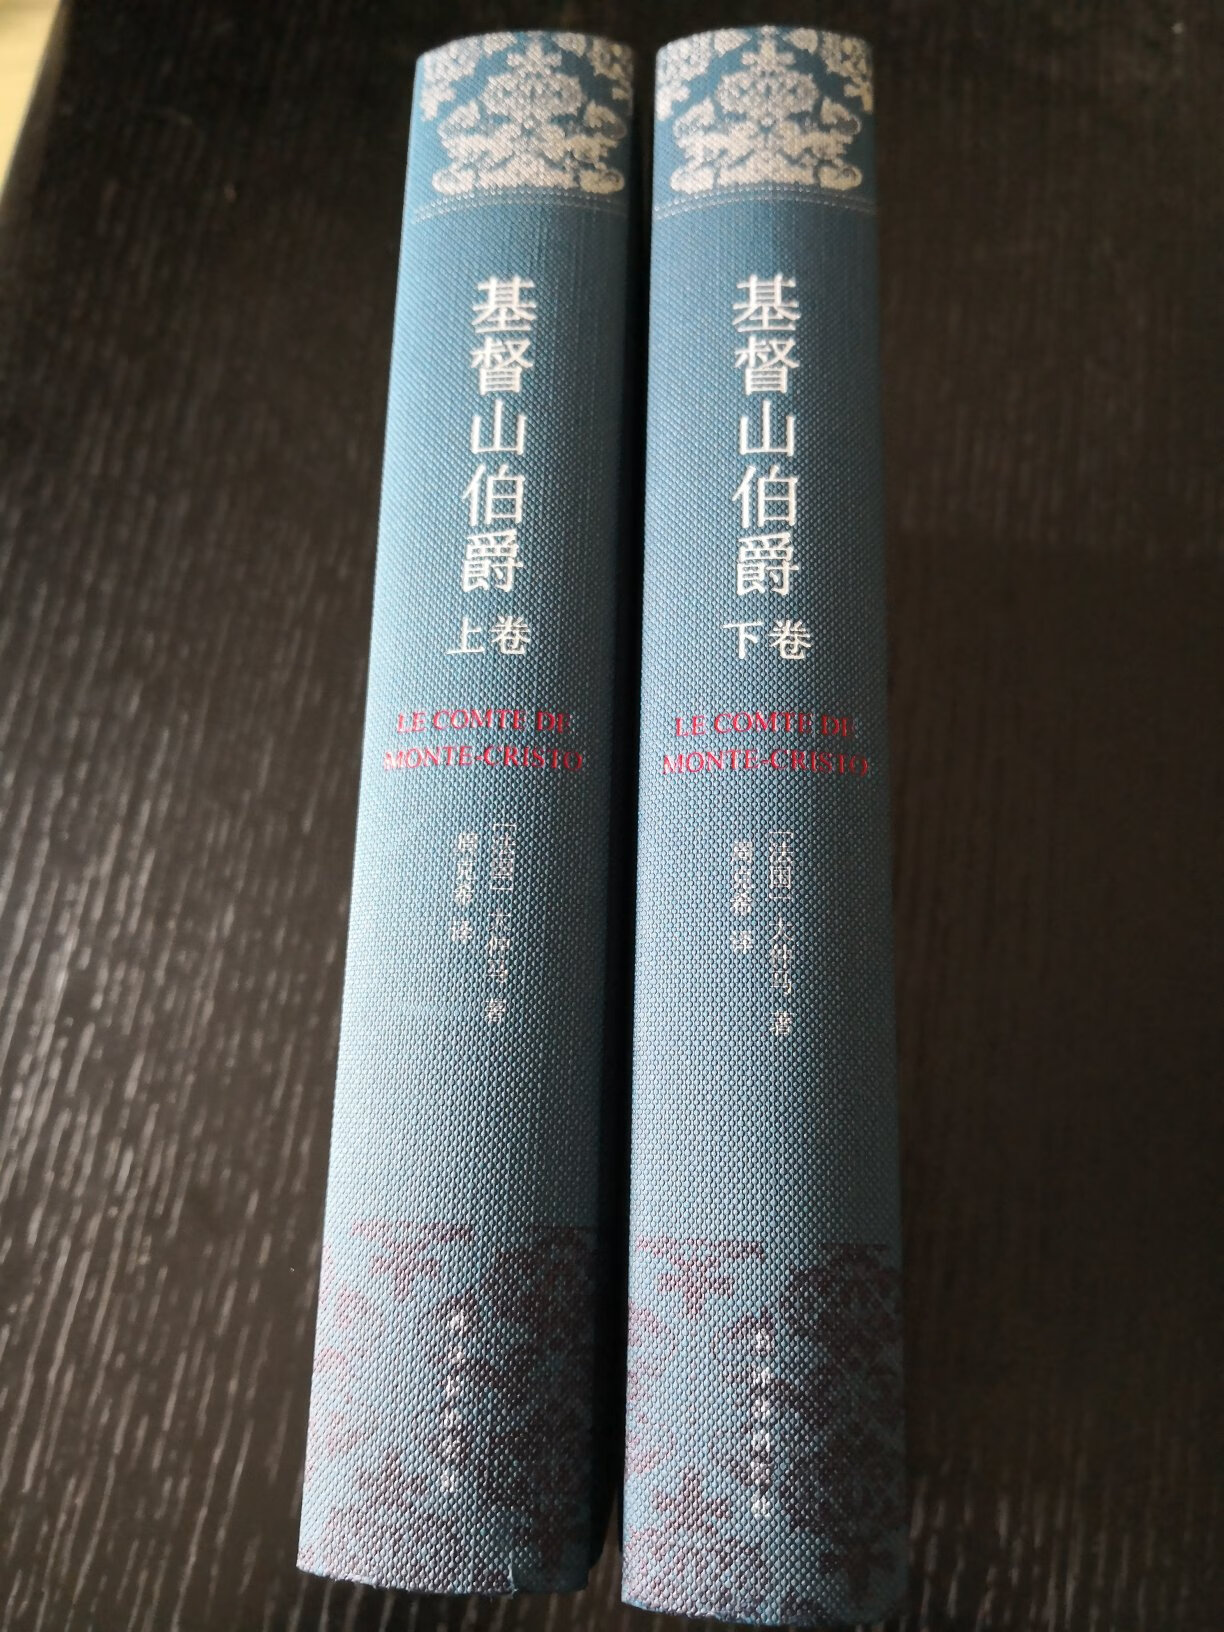 周克希曾经和韩沪麟合作过一个版本，原来由上海译文出版社出版，但那是二十多年前了，当时的用纸和印刷质量都不太好，是单卷本，一千多页，翻阅也不很方便。现在看到译林出版社出了周克希个人译本的布面精装收藏版，就又买了一套。一个人译的风格比较统一，而且这个版本的装帧设计和印刷质量都很好，定价也不高，所以趁着满减果断拿下。